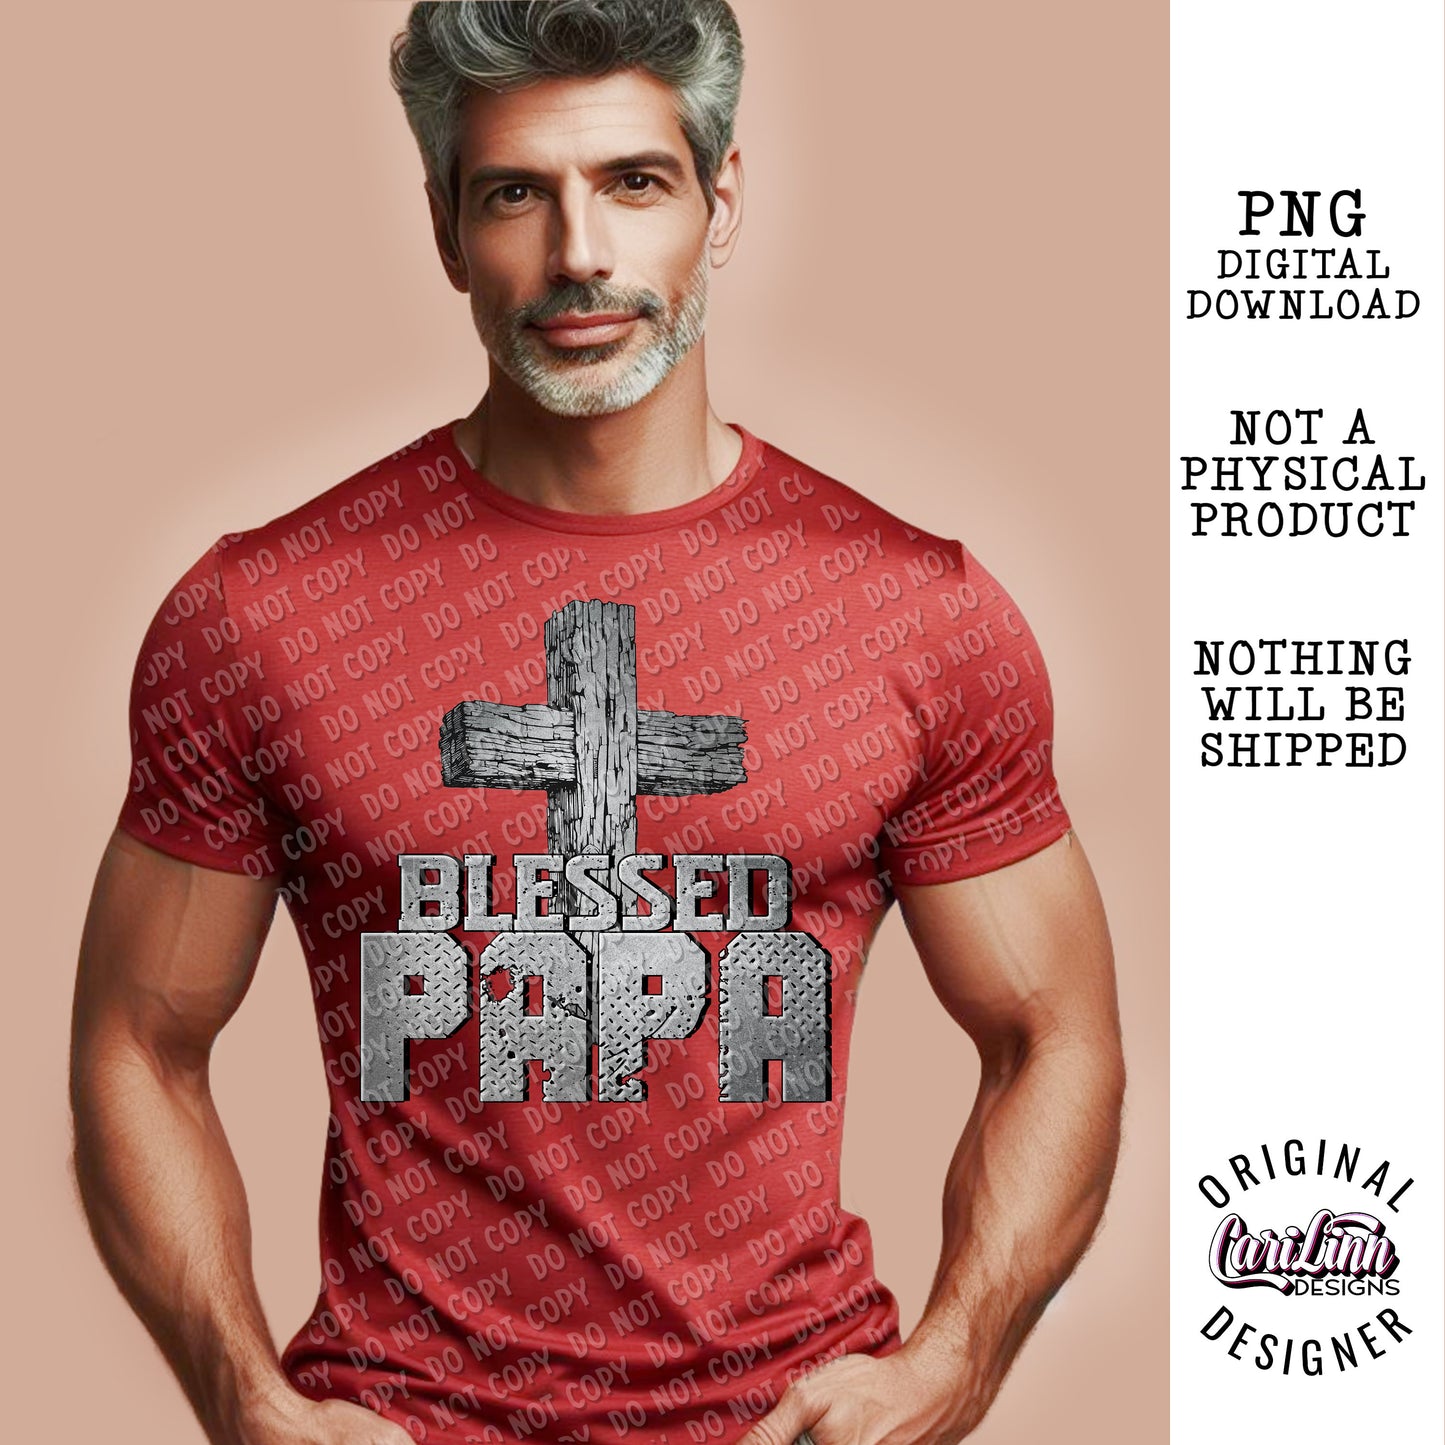 Blessed Papa, Original Designer, PNG Digital Download for Sublimation, DTF, DTG